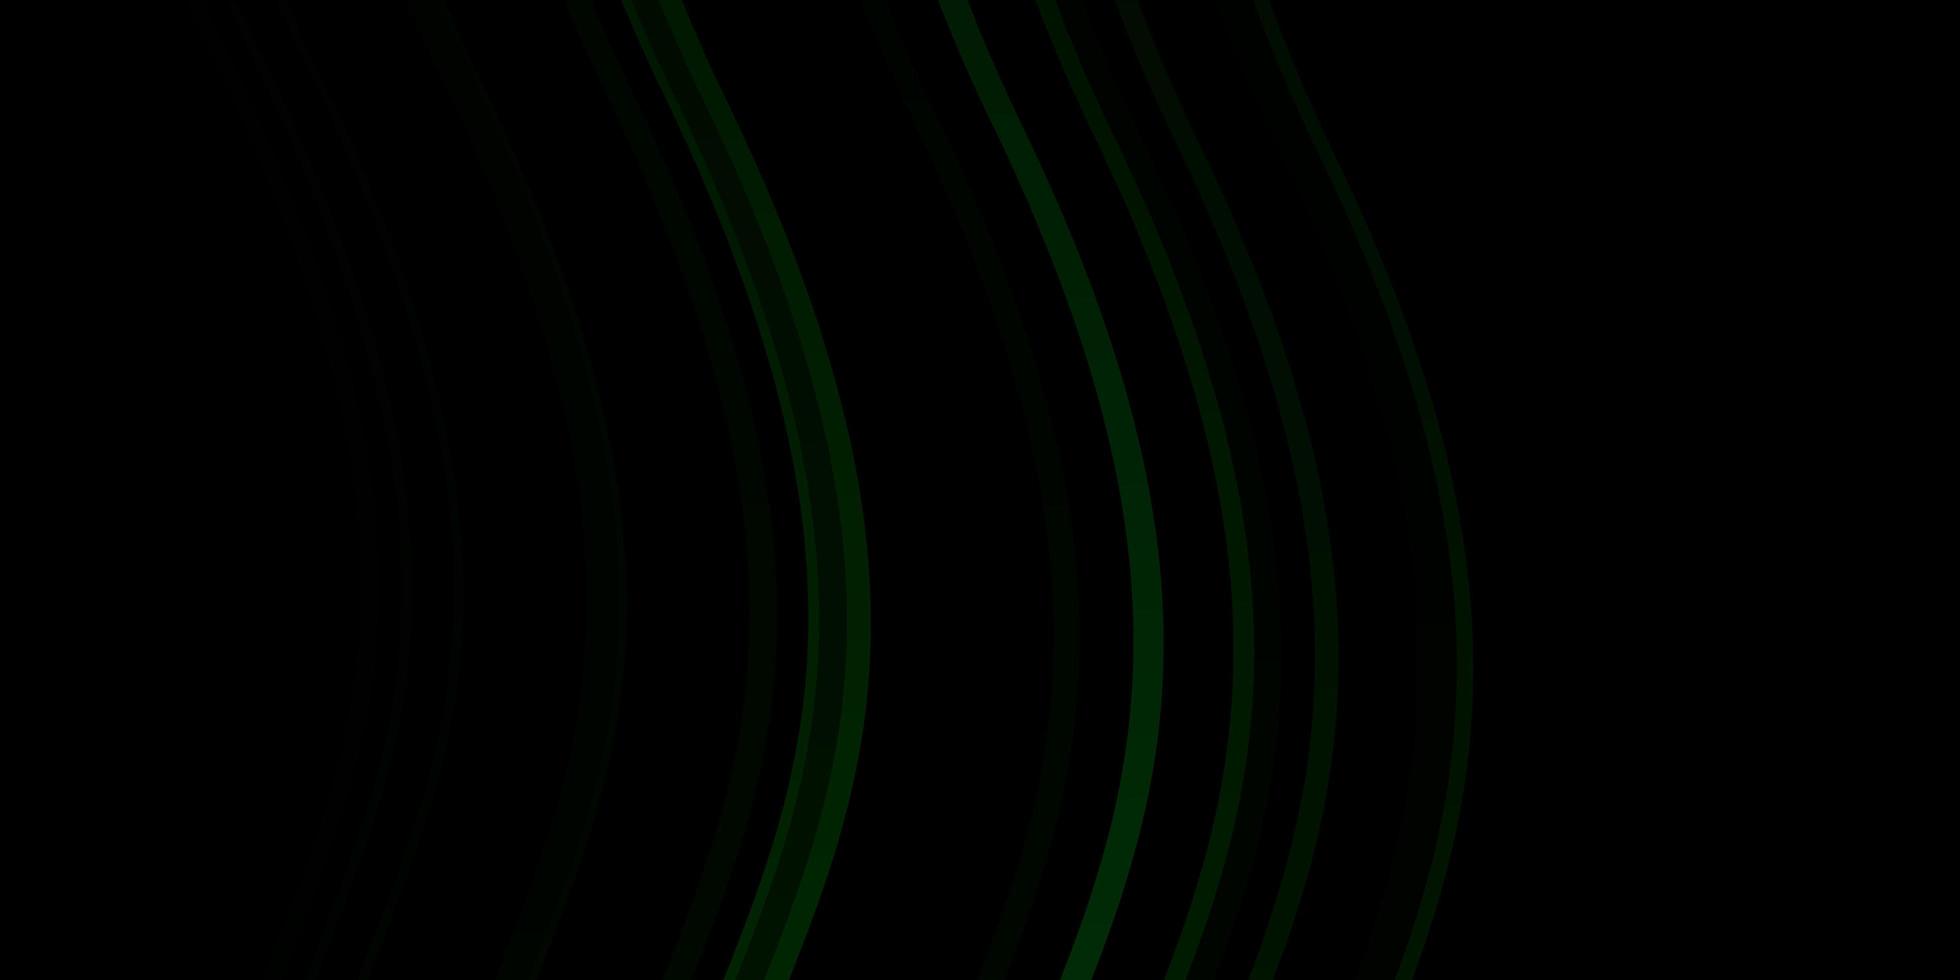 sfondo vettoriale verde scuro con fiocchi.